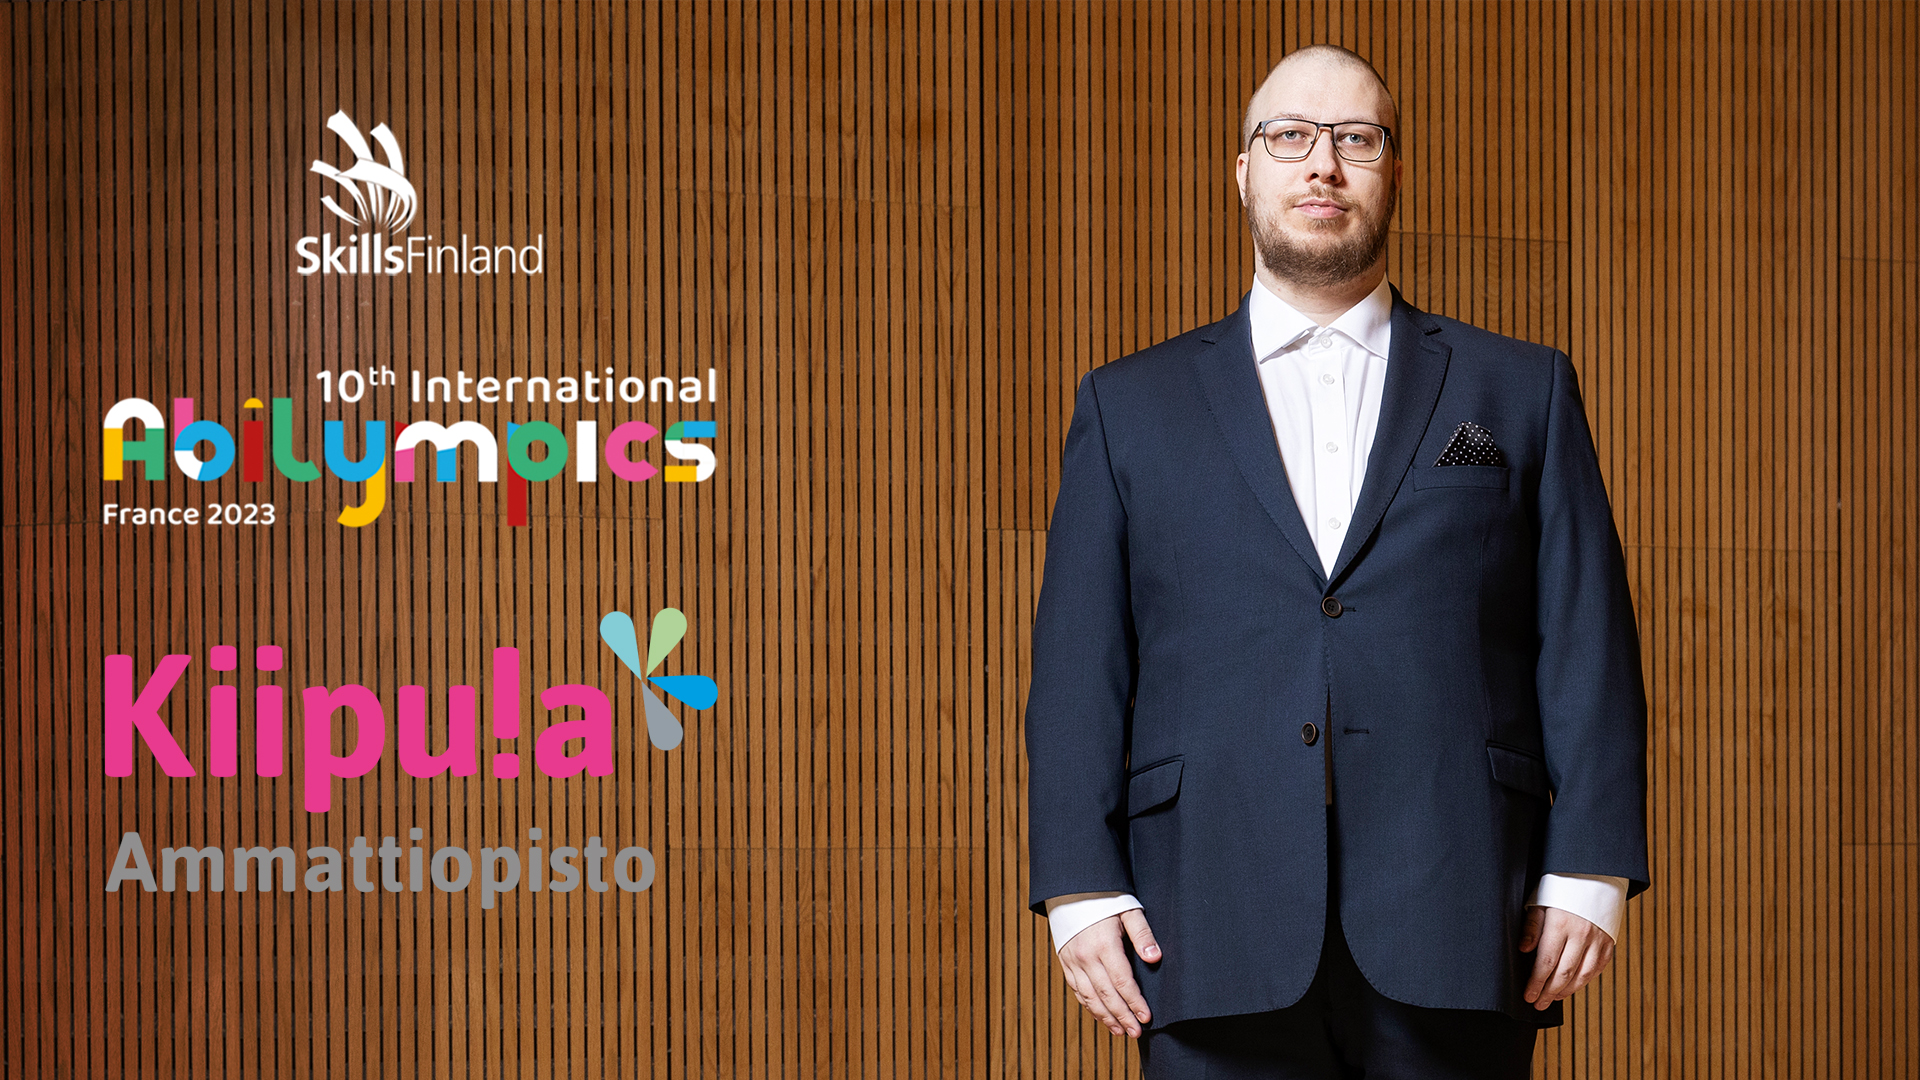 Jani Jalassalo seisoo puku päällä. Kuvassa myös Skills Finland ry:n, Abilympicsin sekä Kiipulan ammattiopiston logot.